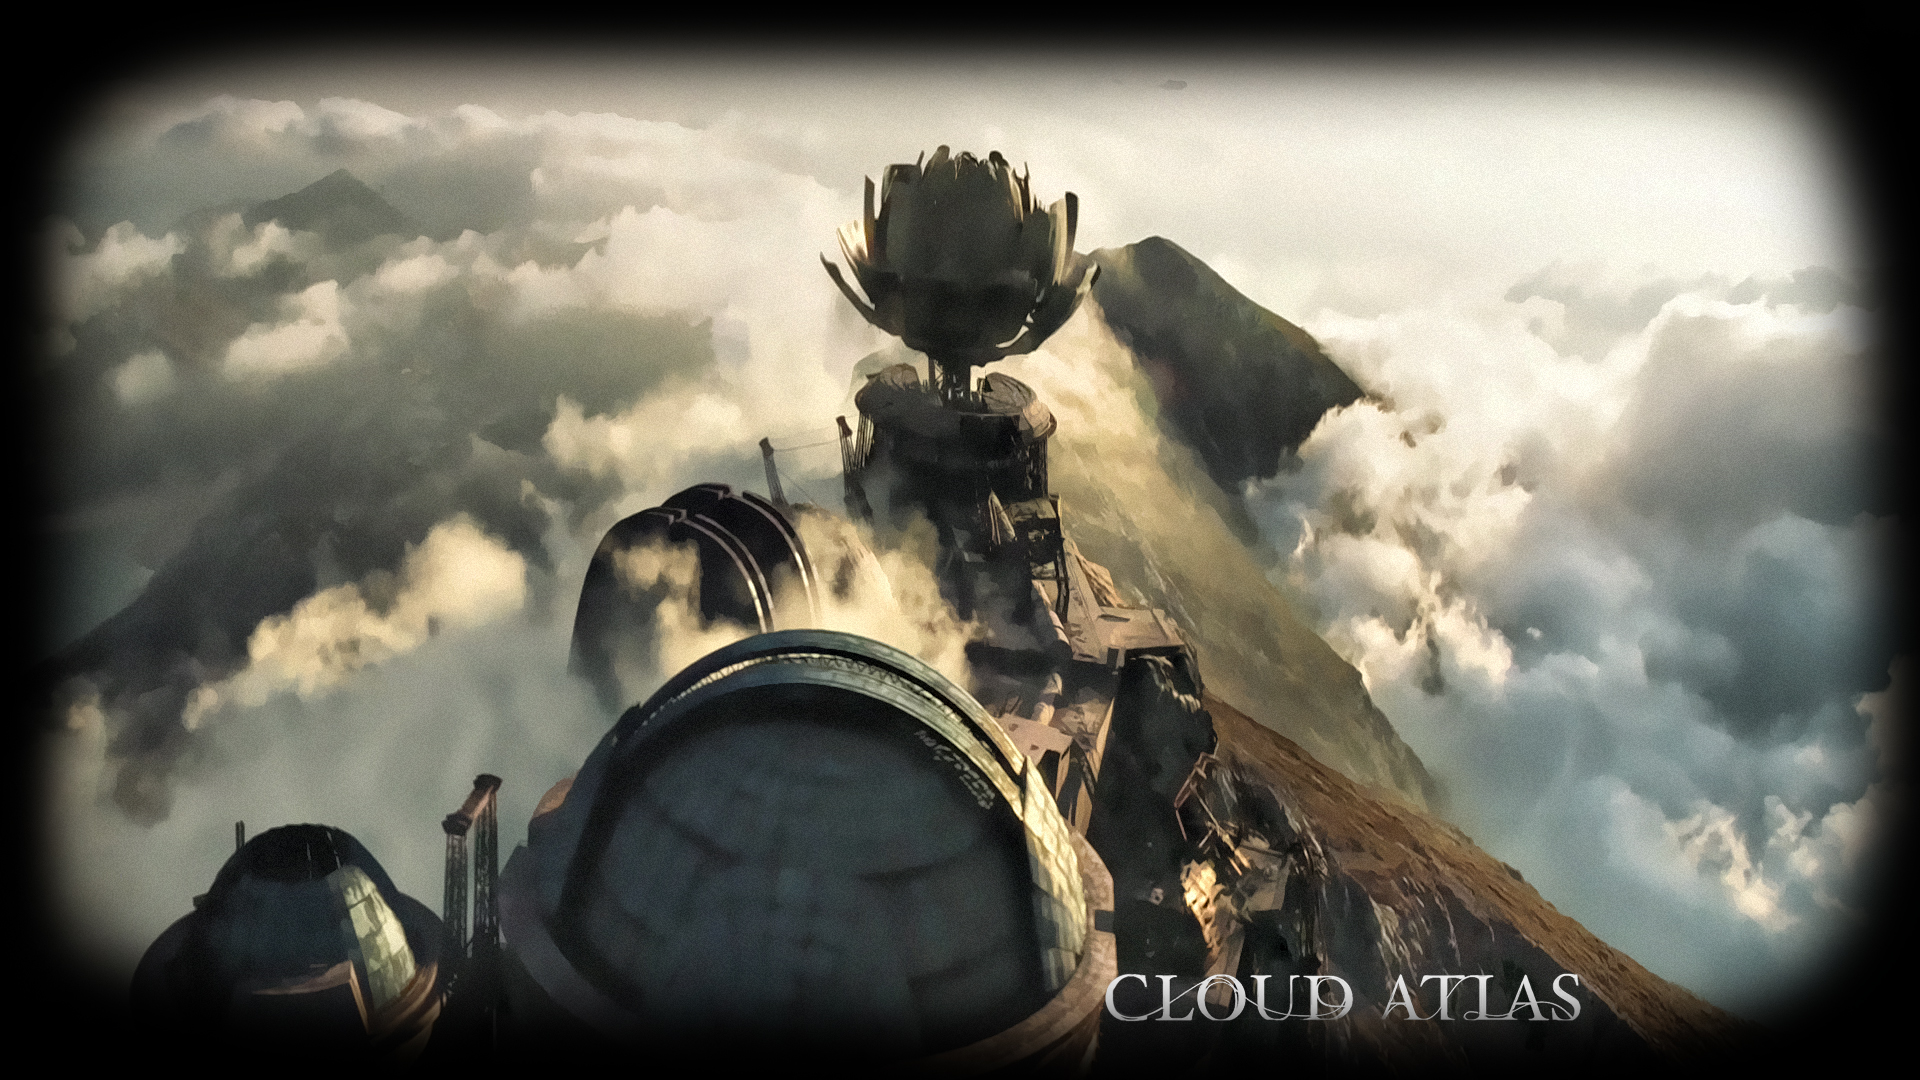 구름 아틀라스 벽지,하늘,디지털 합성,cg 삽화,구름,세계